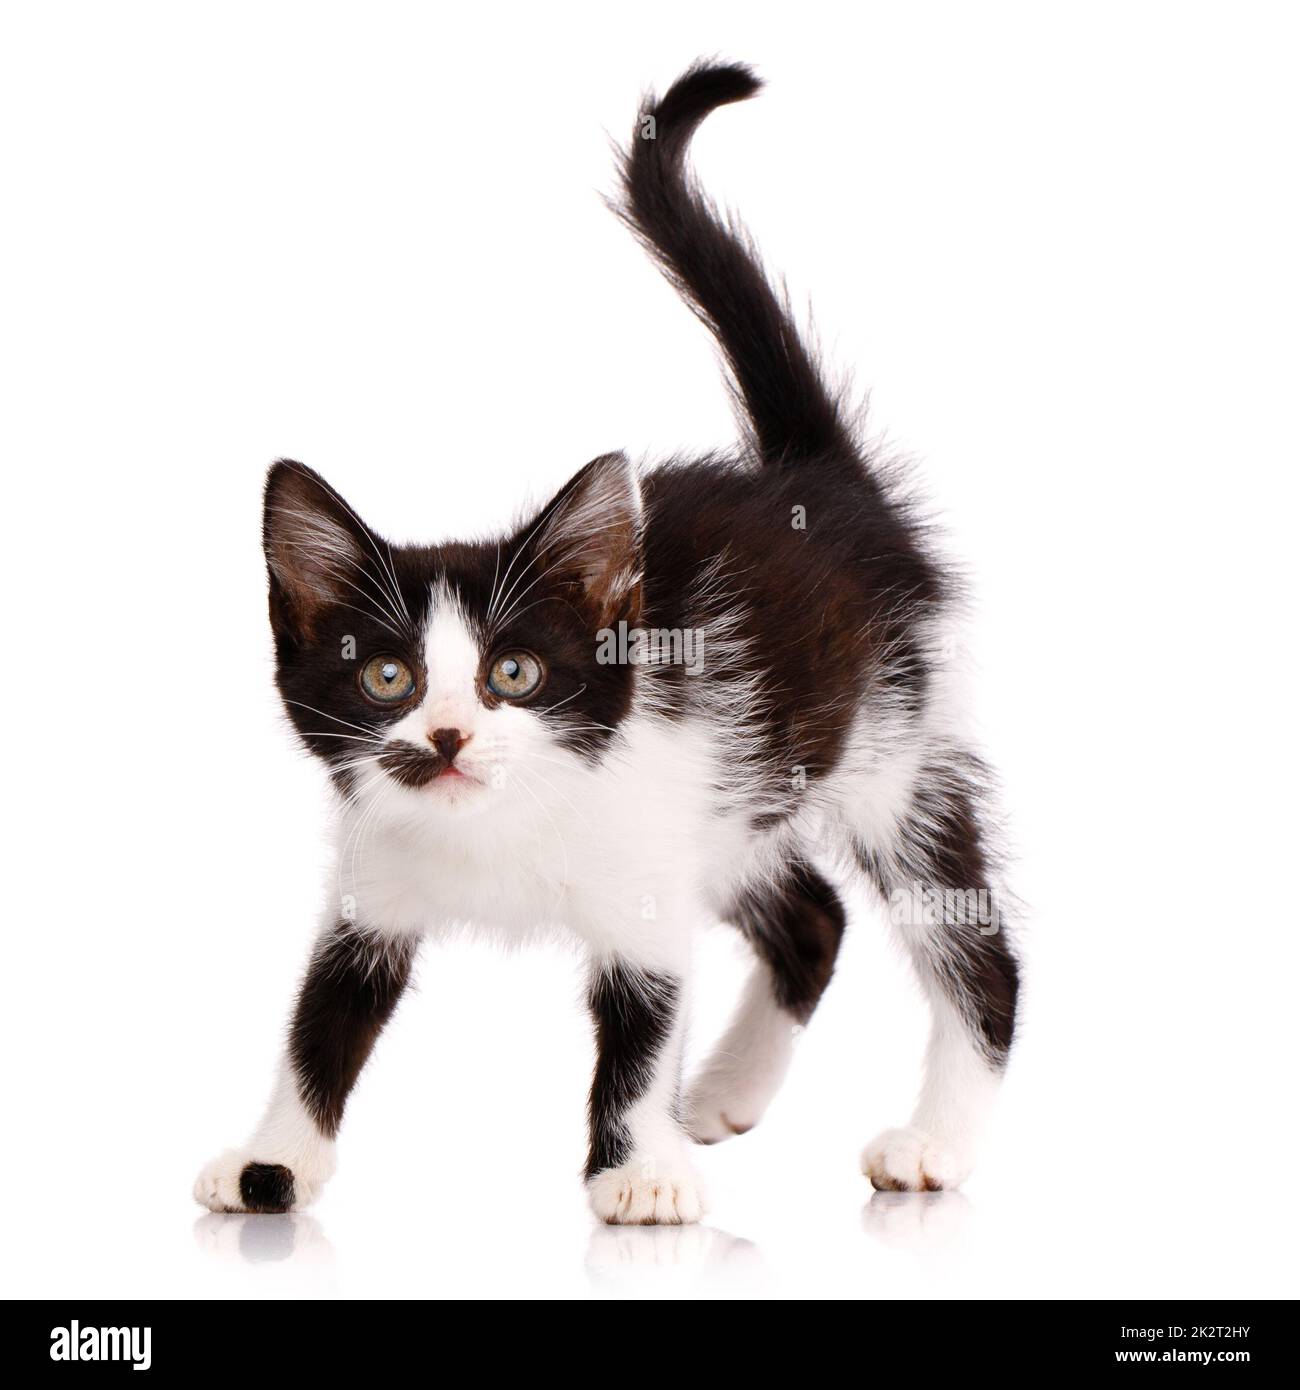 Ritratto di un gattino bianco e nero giocoso e focalizzato che vuole attaccare. Isolato su sfondo bianco. Foto Stock